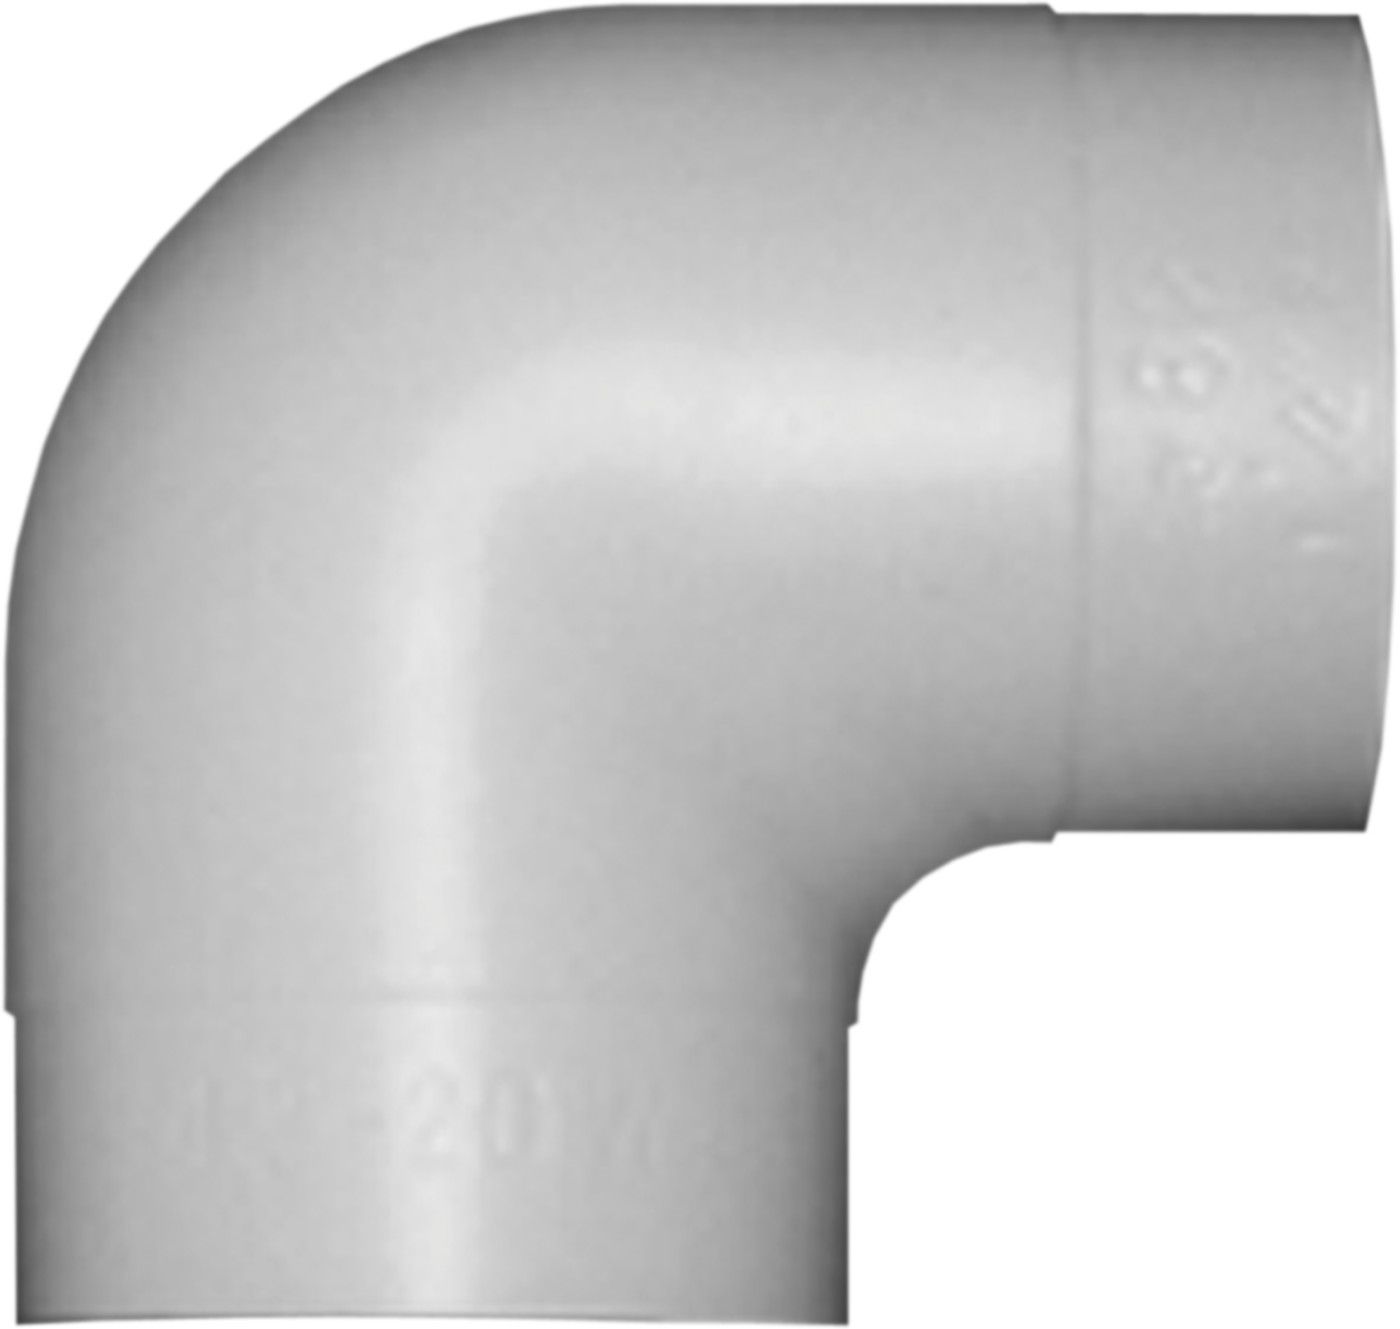 PVC-Bogen 90° W 30 mm d 42 mm (für 17/18-40, 21/22-40, 60-20) - PVC-Folie